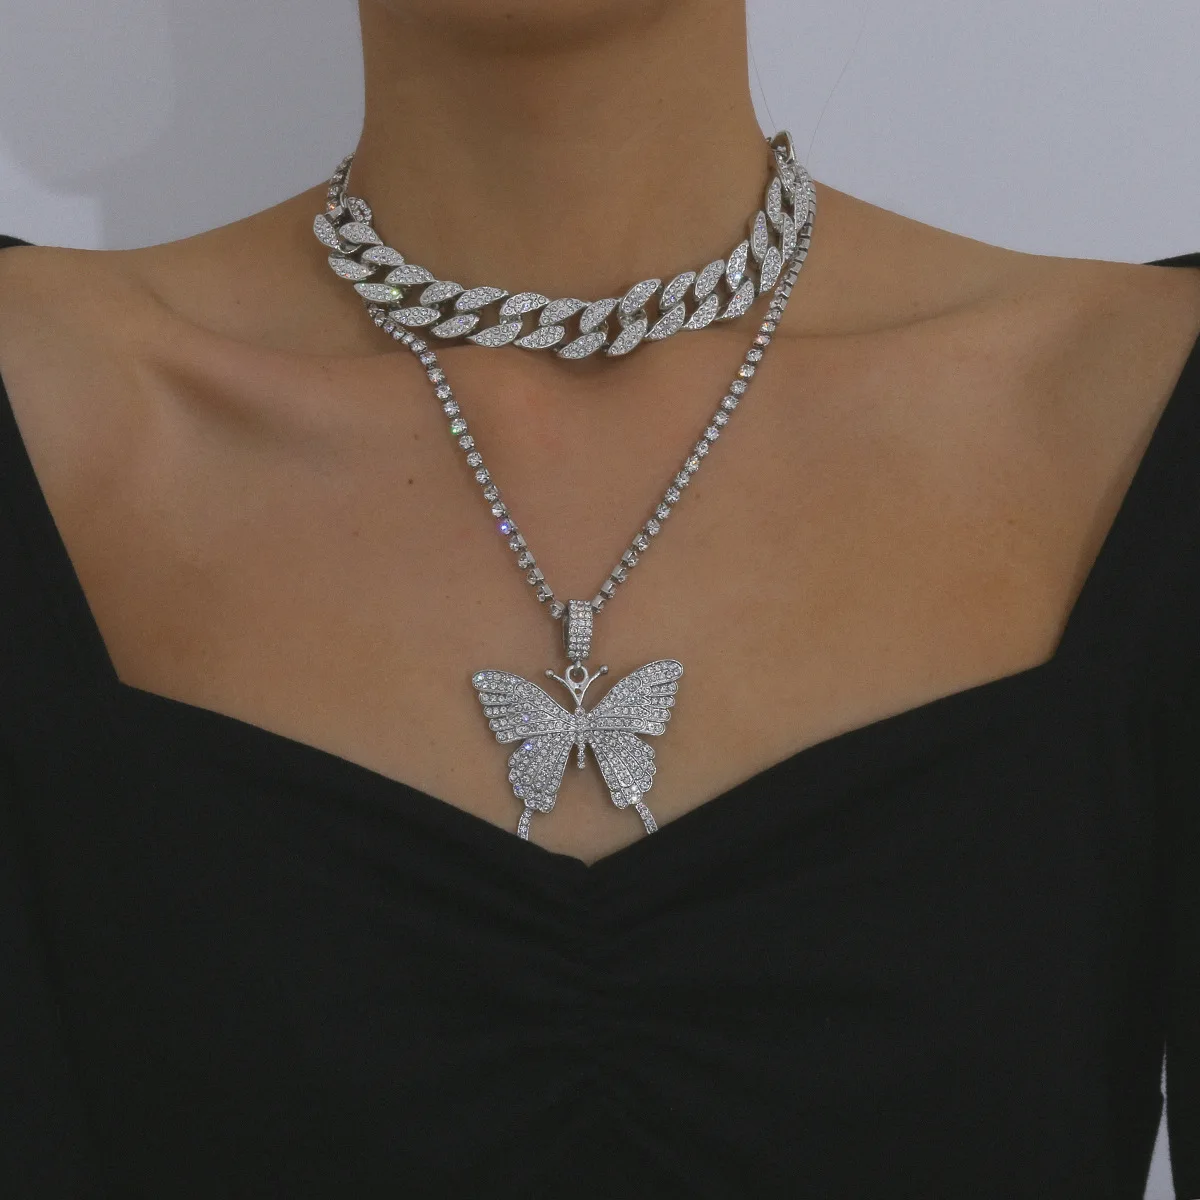 

Цепочка с подвеской-бабочкой для девушек, роскошная цепь из металла для тенниса, многослойное ожерелье в стиле хип-хоп для работы, модное Юв...